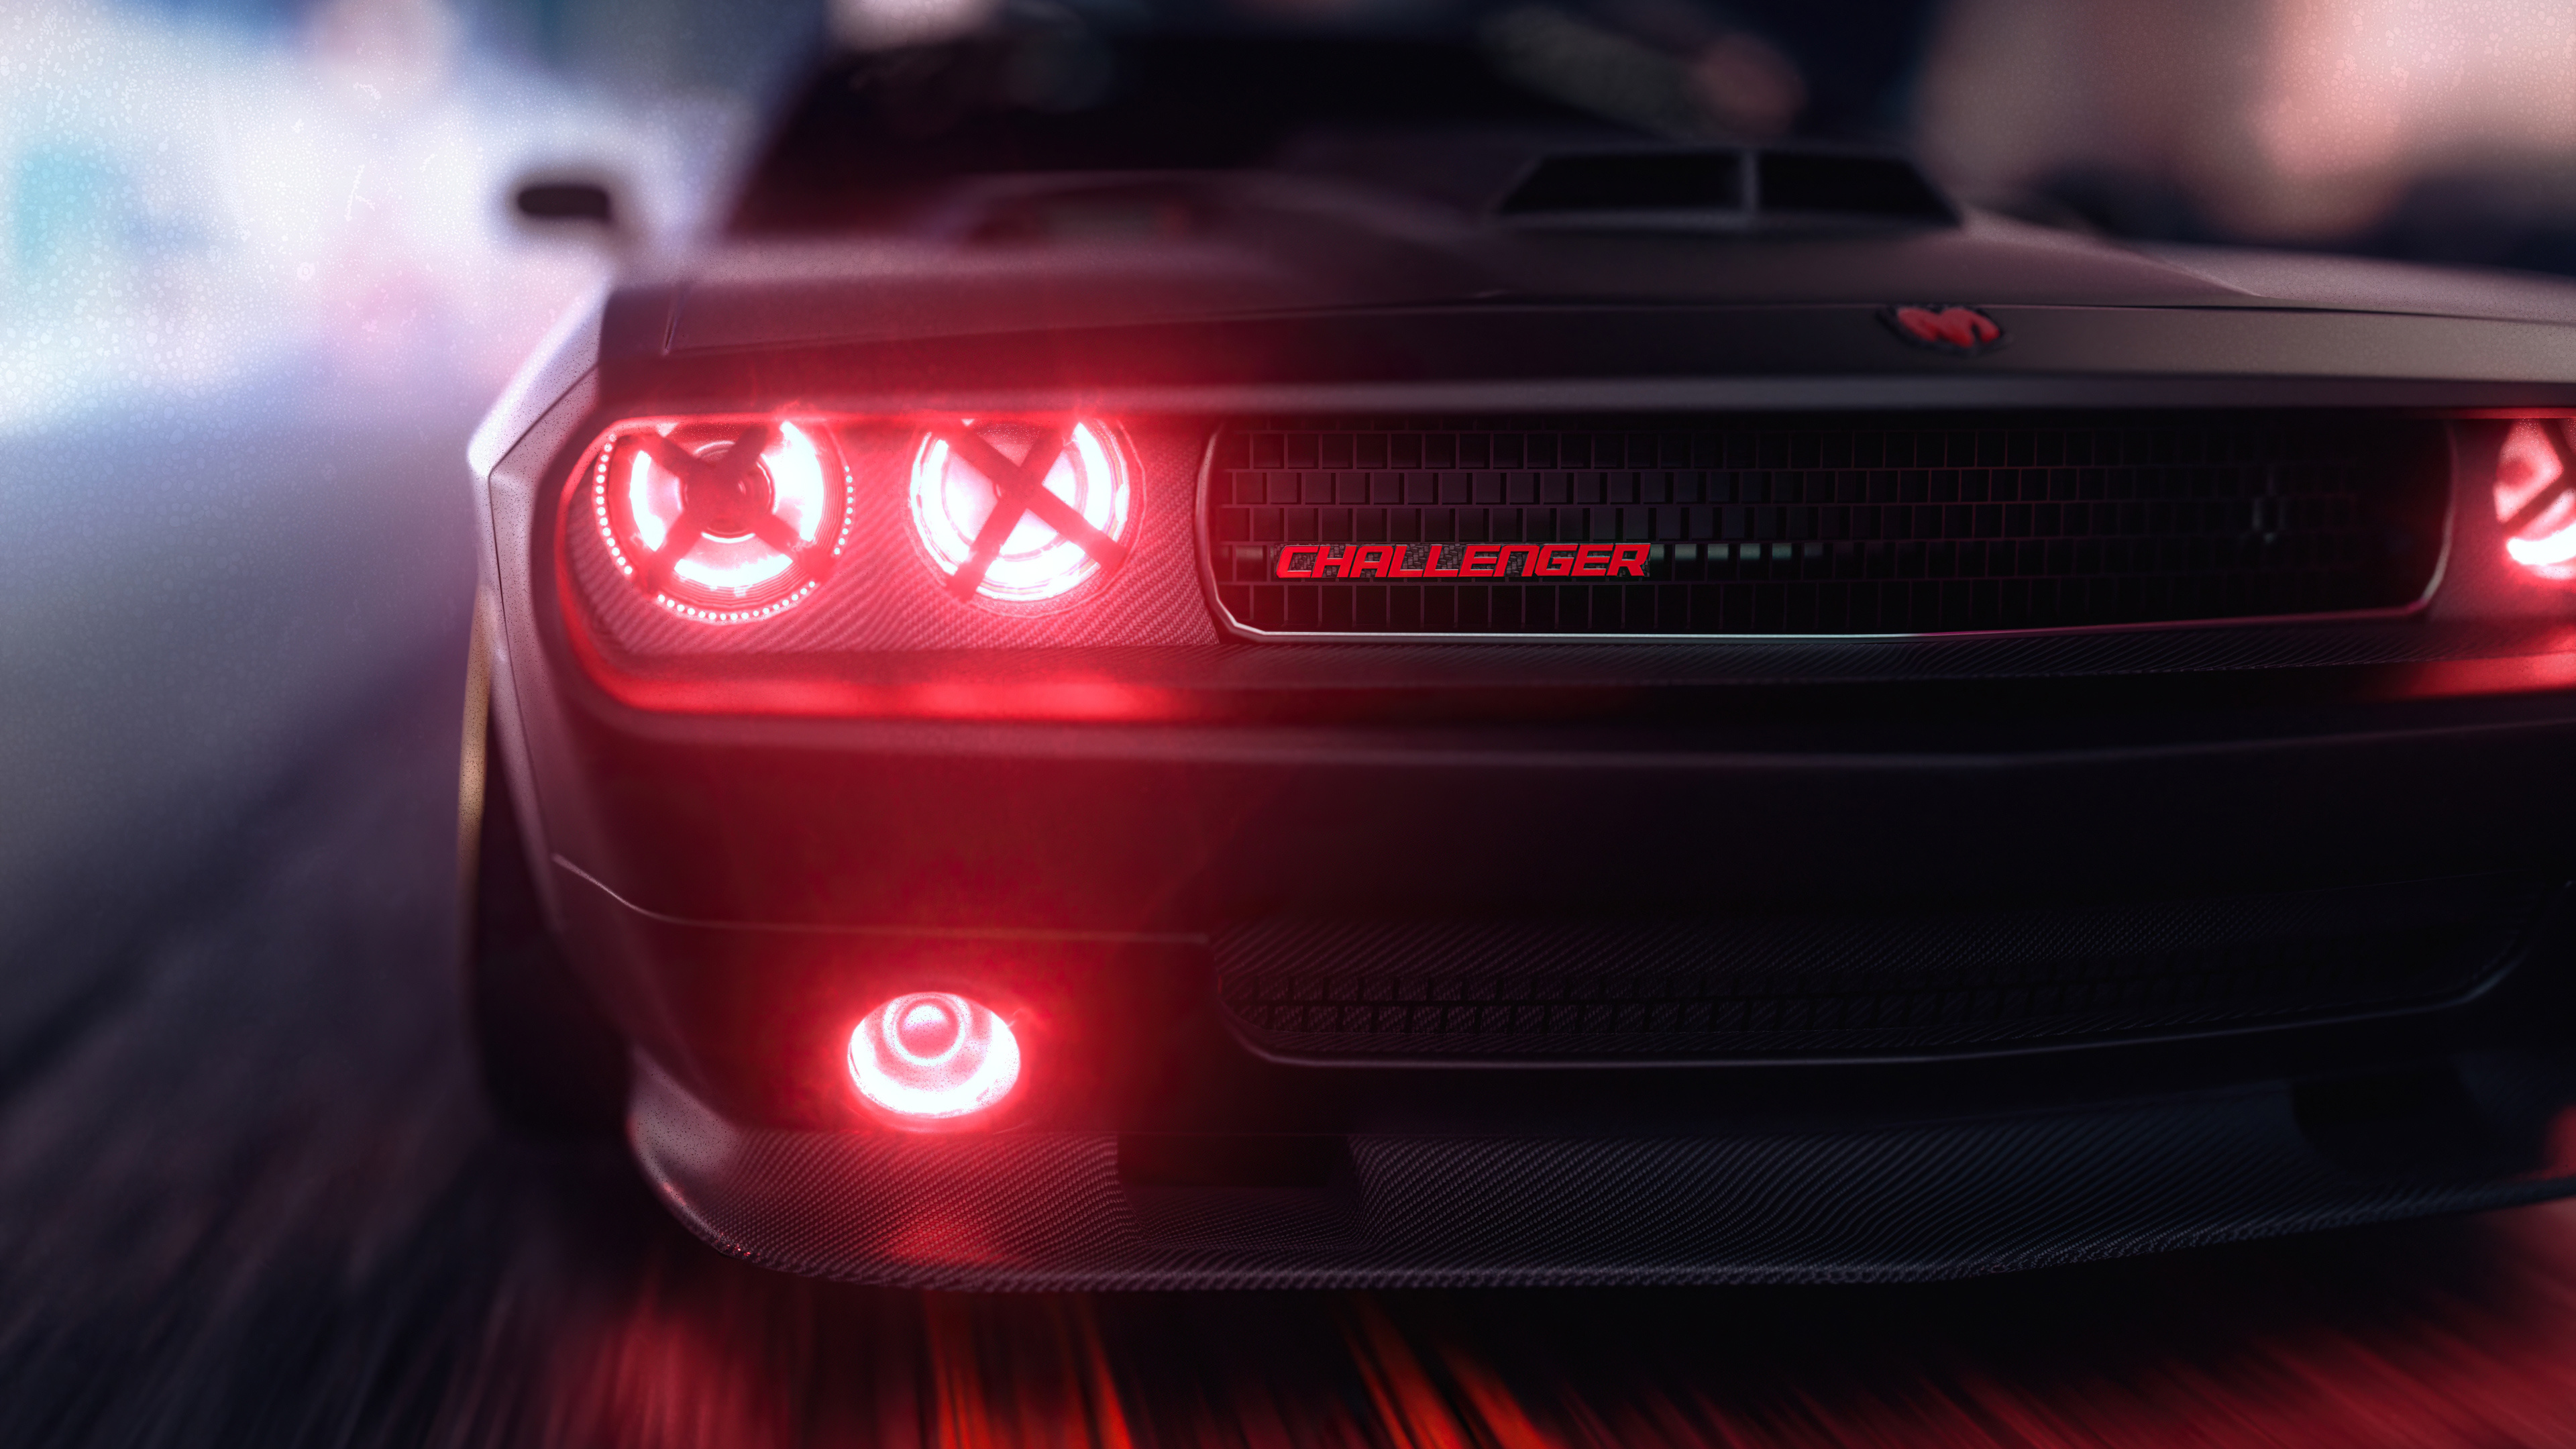 Dodge Challenger, Angel headlights, Cars 4K wallpapers, Auto expert, 3840x2160 4K Desktop